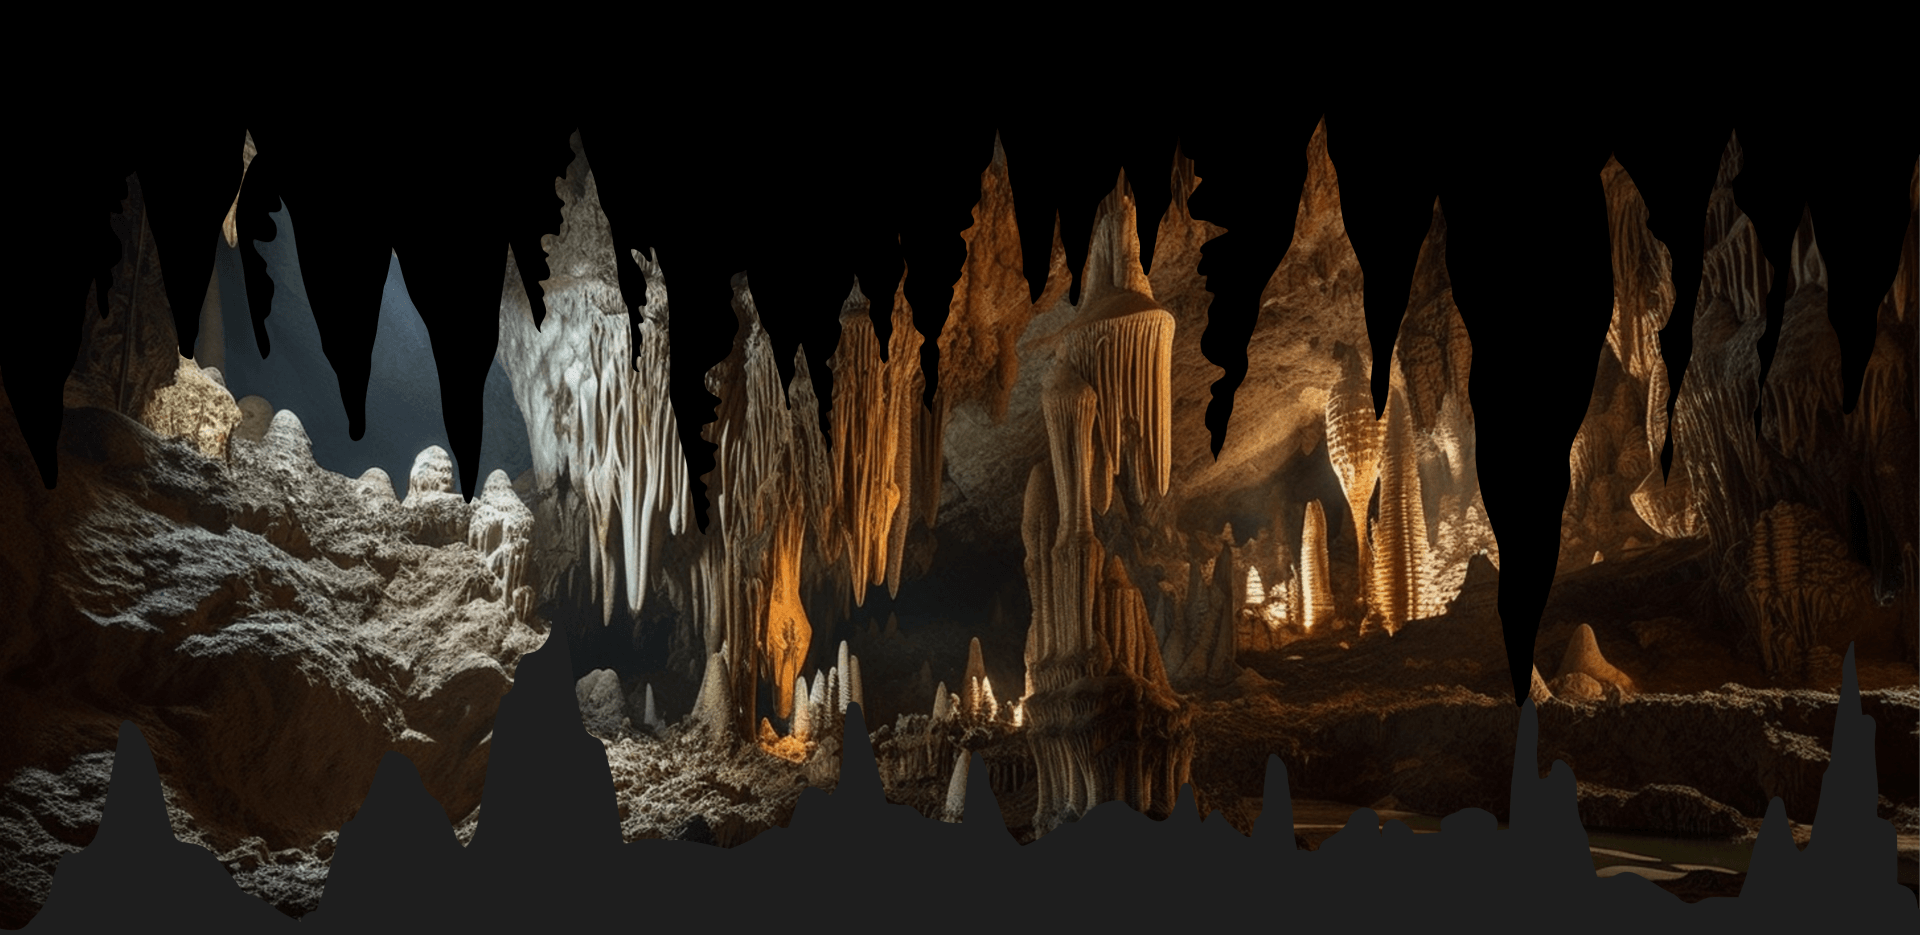 L’intérieur d’une caverne, et le titre de l’article : « L’exploration de cavernes un loisir fascinant ». 